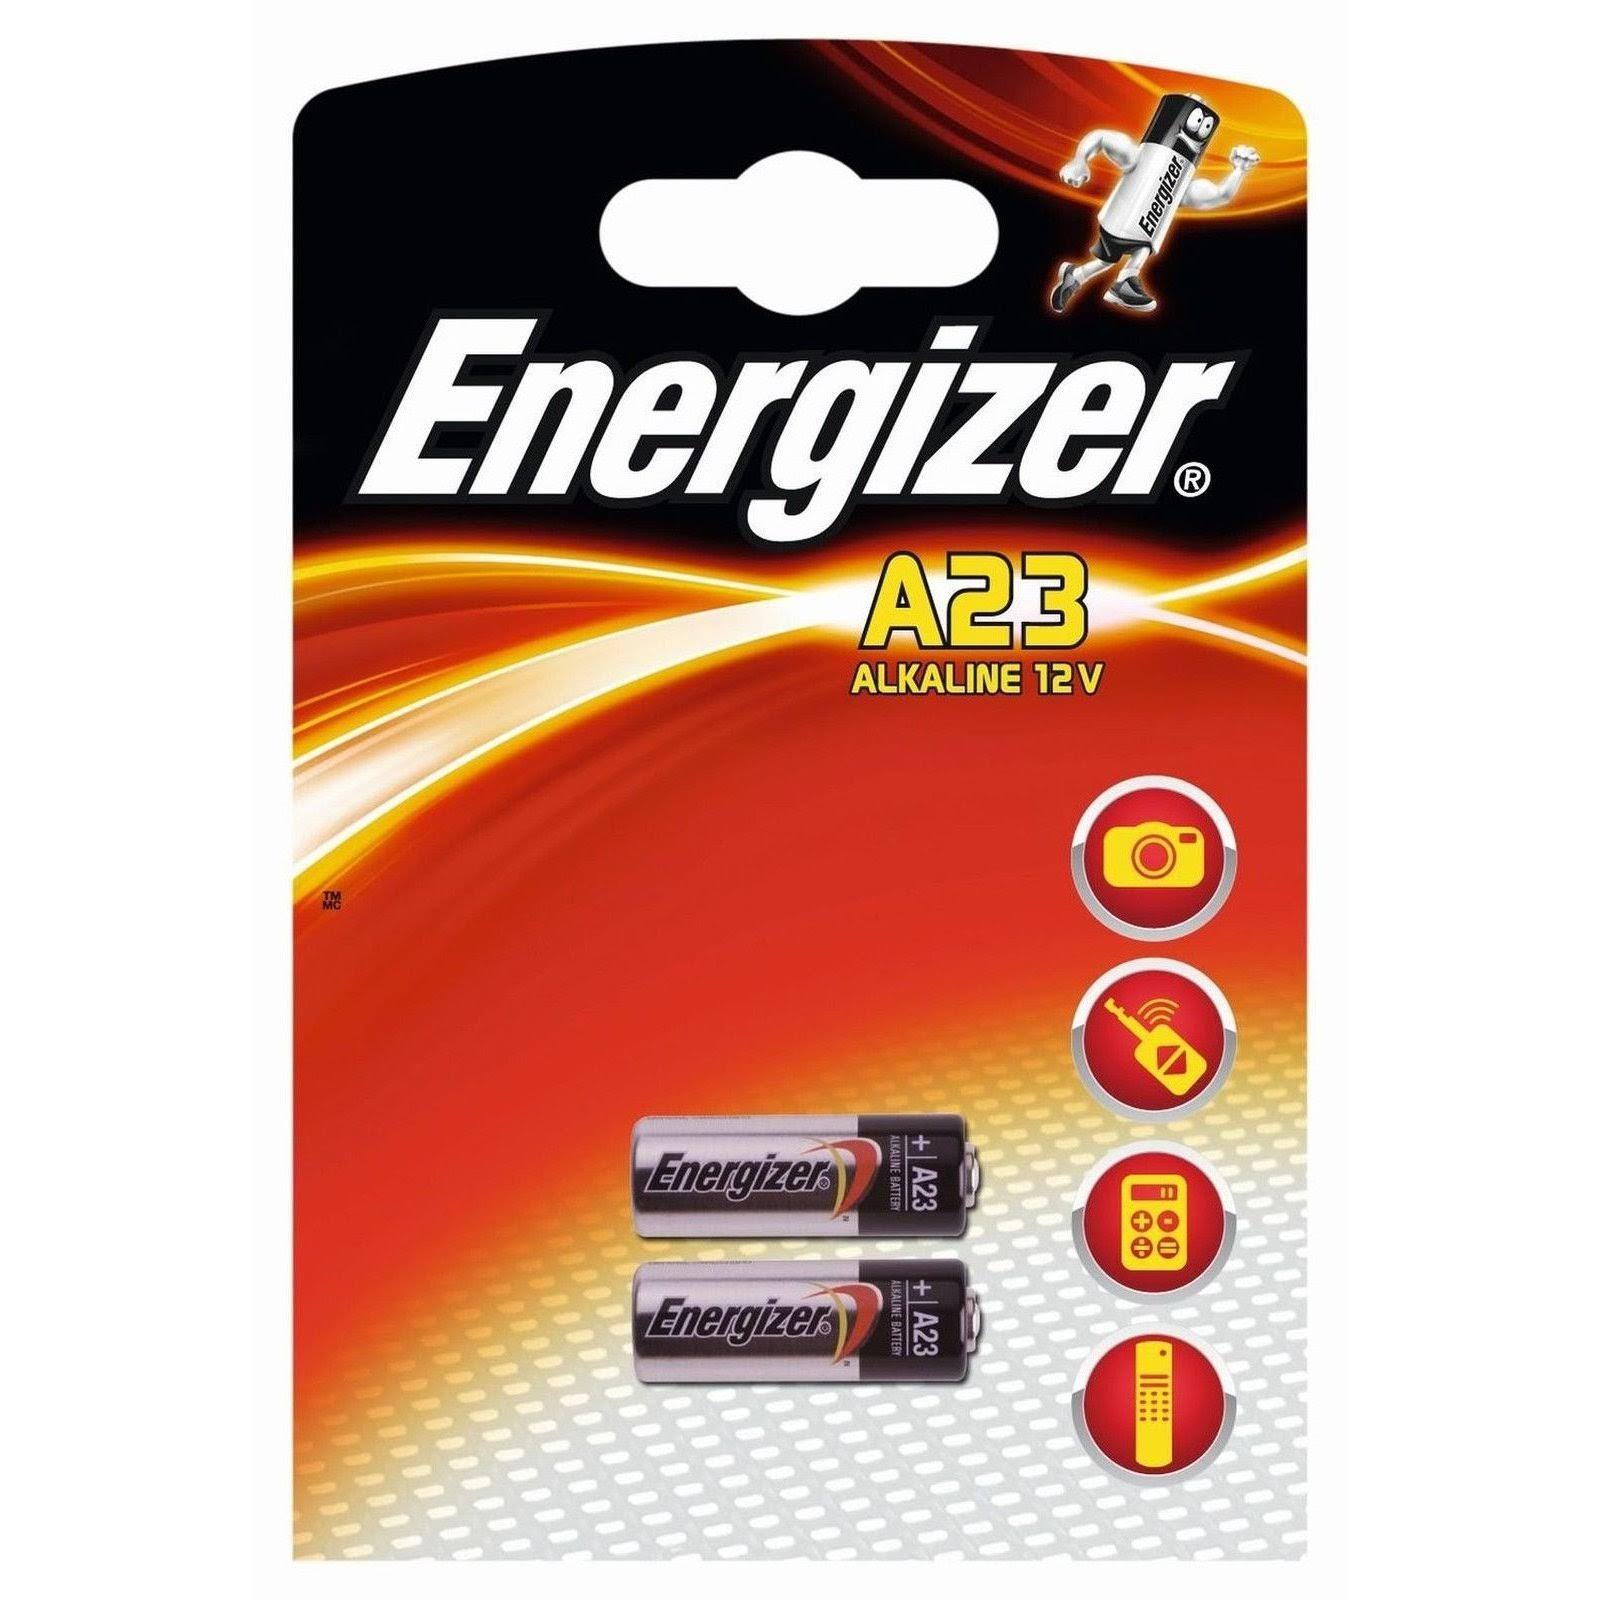 Energizer A23 Alkaline Battery - 2pk, 12V